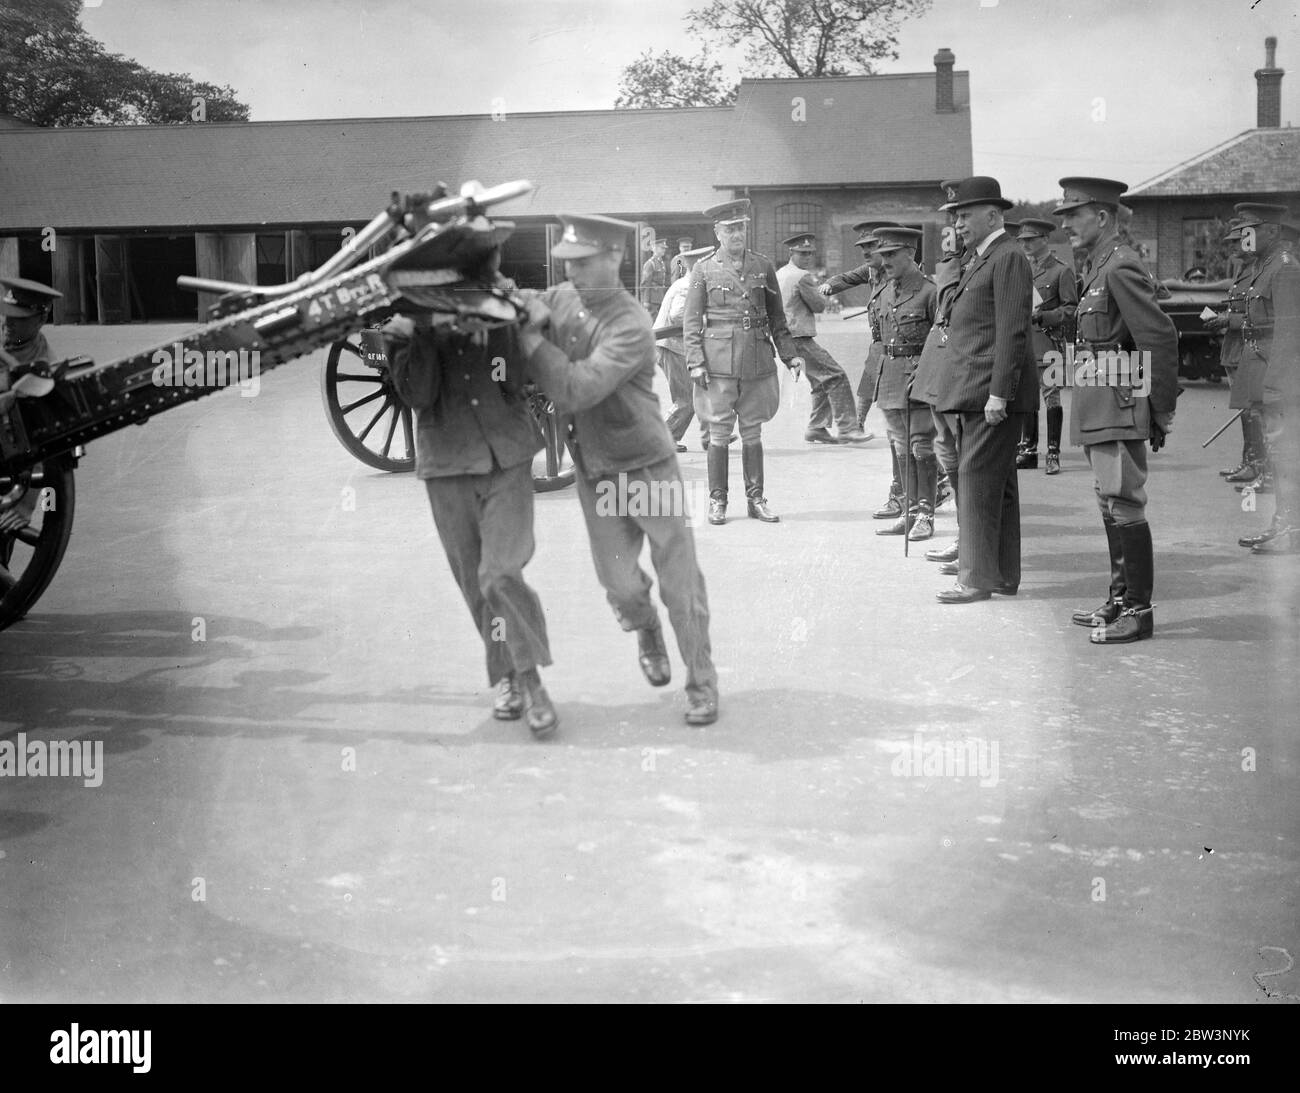 Earl of Athlone und Chief of Imperial General Staff besuchen Royal Artillery Depot in Woolwich . Der Earl of Athlone und Feldmarschall Sir Archibald Montgomery Massingberd beobachten ein Gewehrteam. 19 Juli 1935 Stockfoto